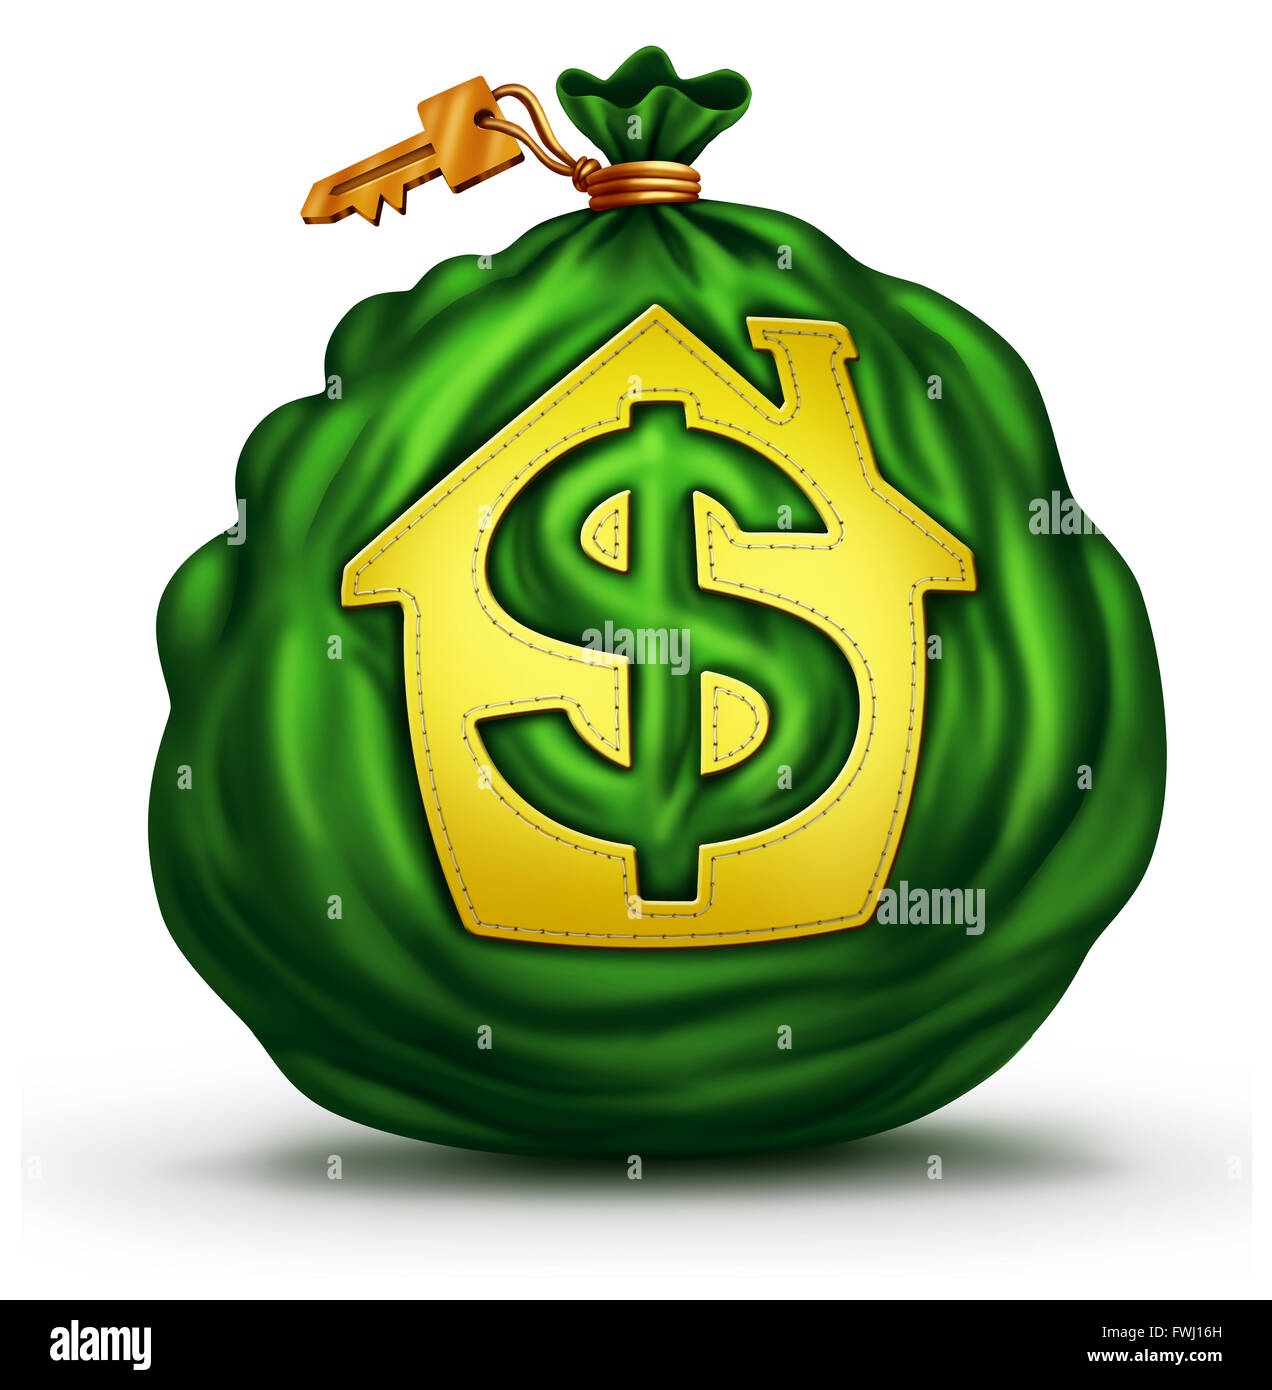 Banca ipotecaria simbolo come un verde sacco di denaro con una casa o un'icona home con un dollaro signas un economico e finanziario per la metafora del credito residenziale e business immobiliare. Foto Stock